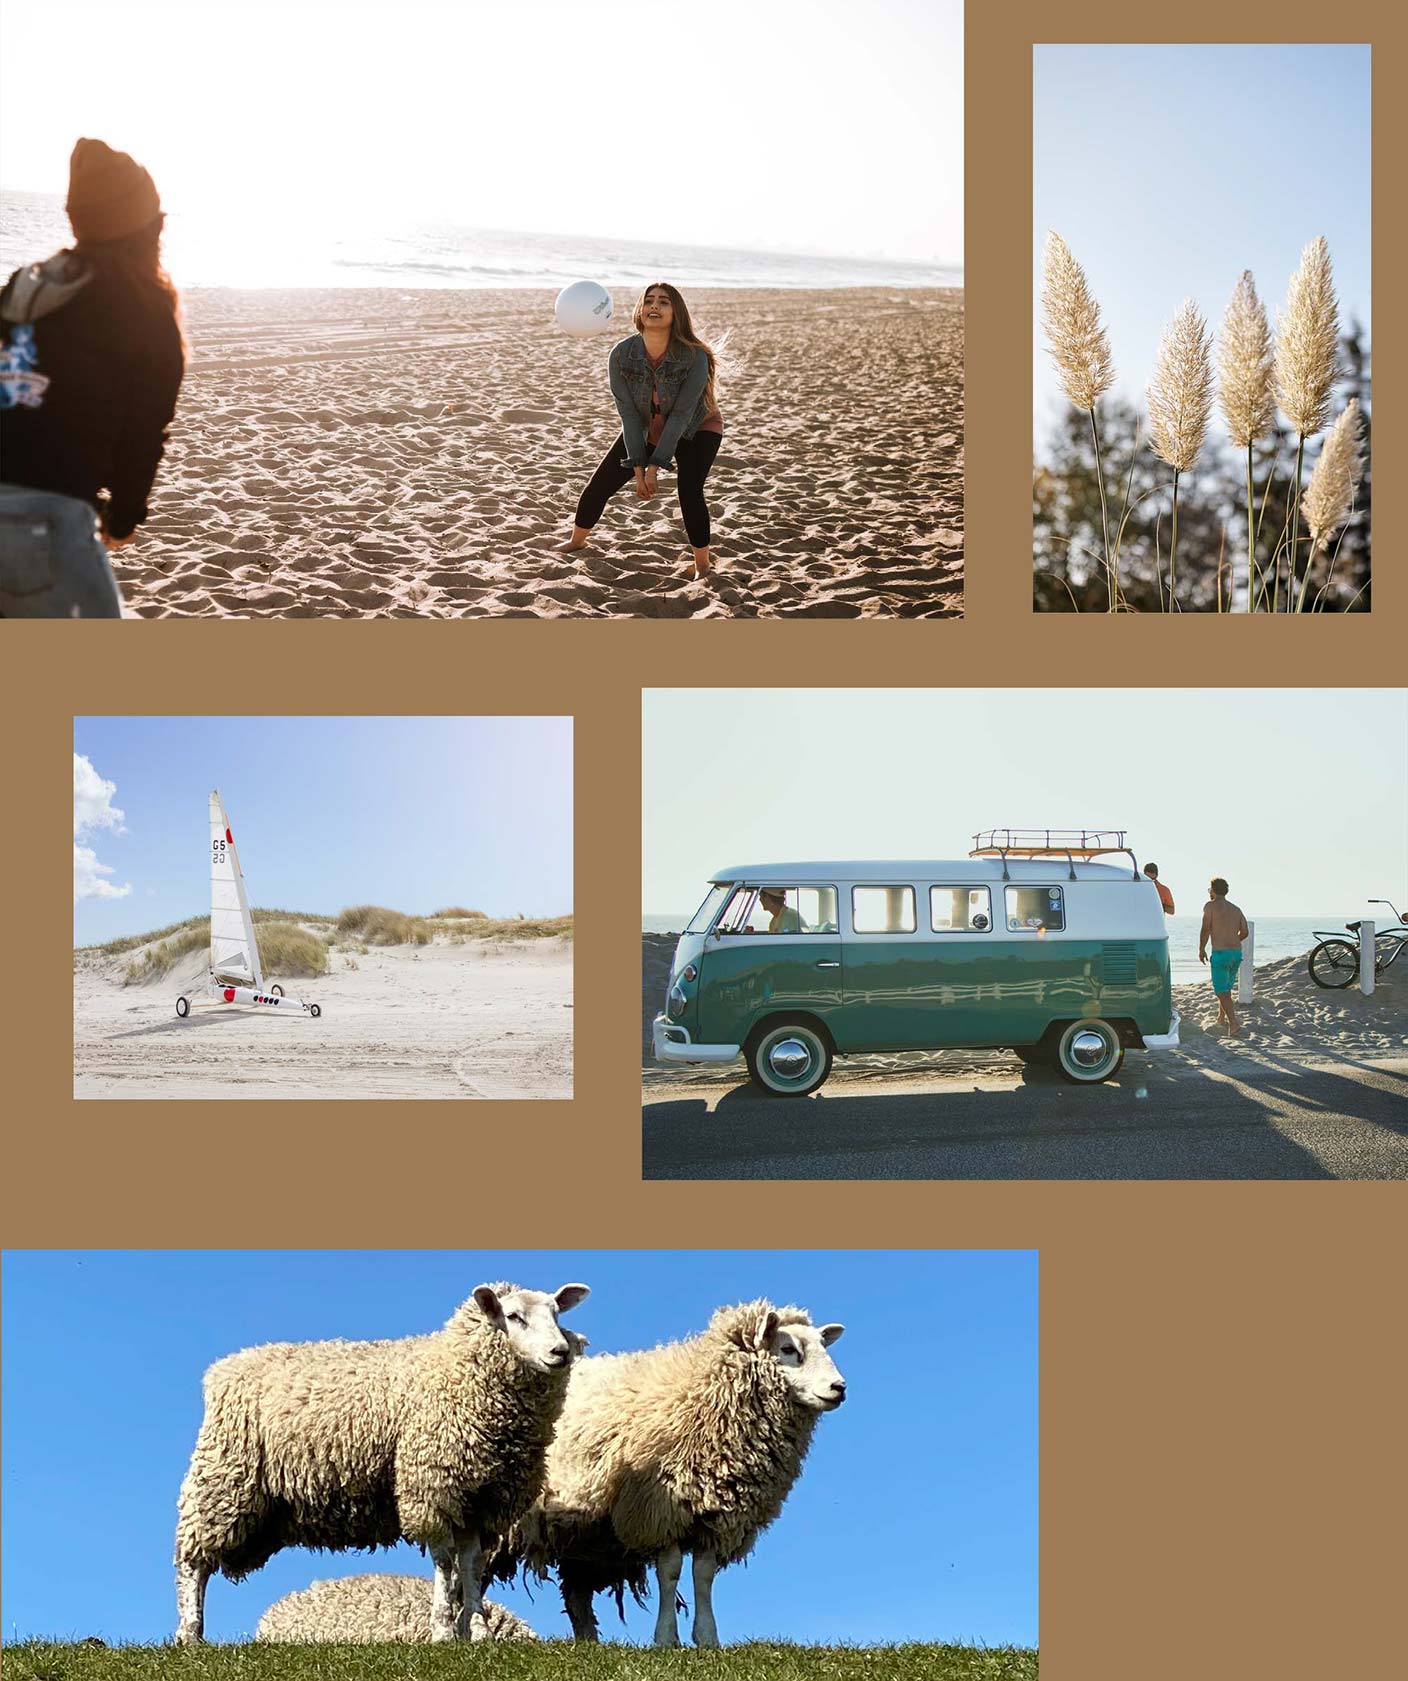 Fotogalerie: Beachvolleyball, Strandsegeln, VW Bulli, Flora und Fauna